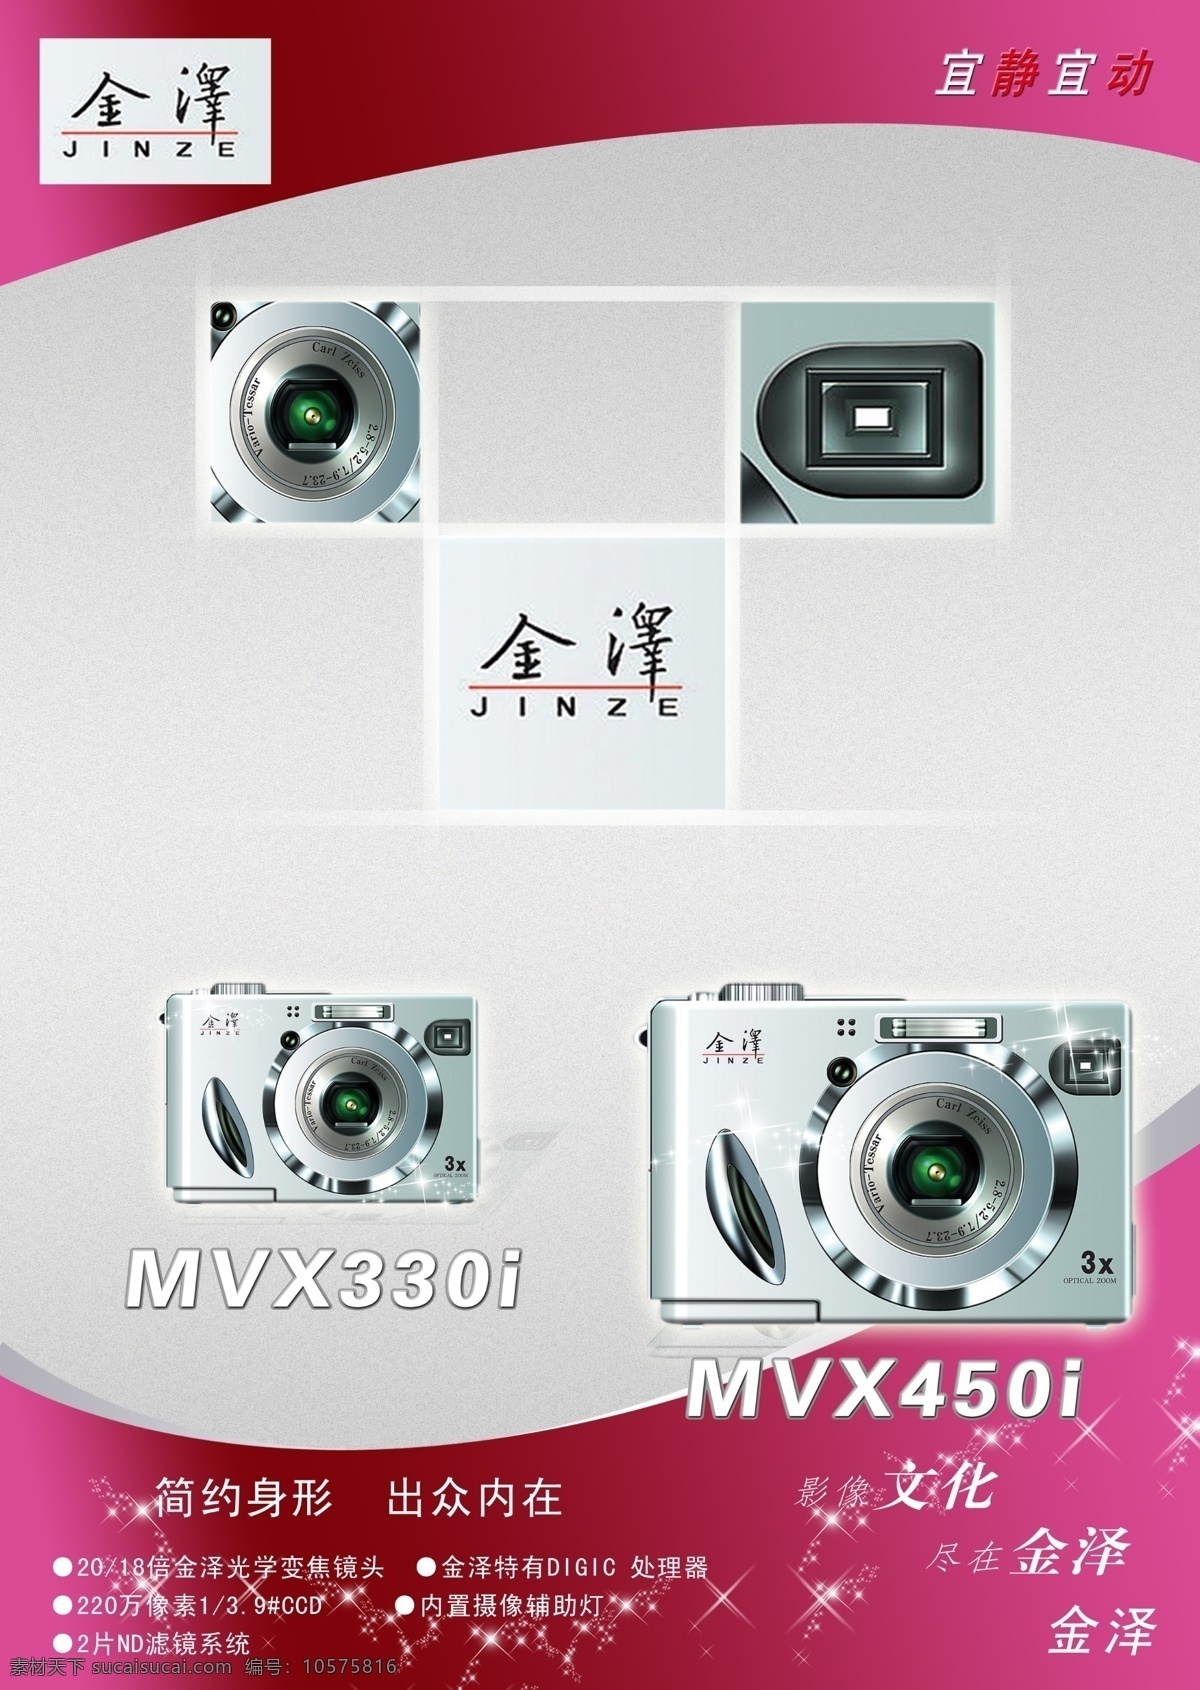 广告设计模板 数码相机 相机 源文件库 金泽 广告 模板下载 psd源文件